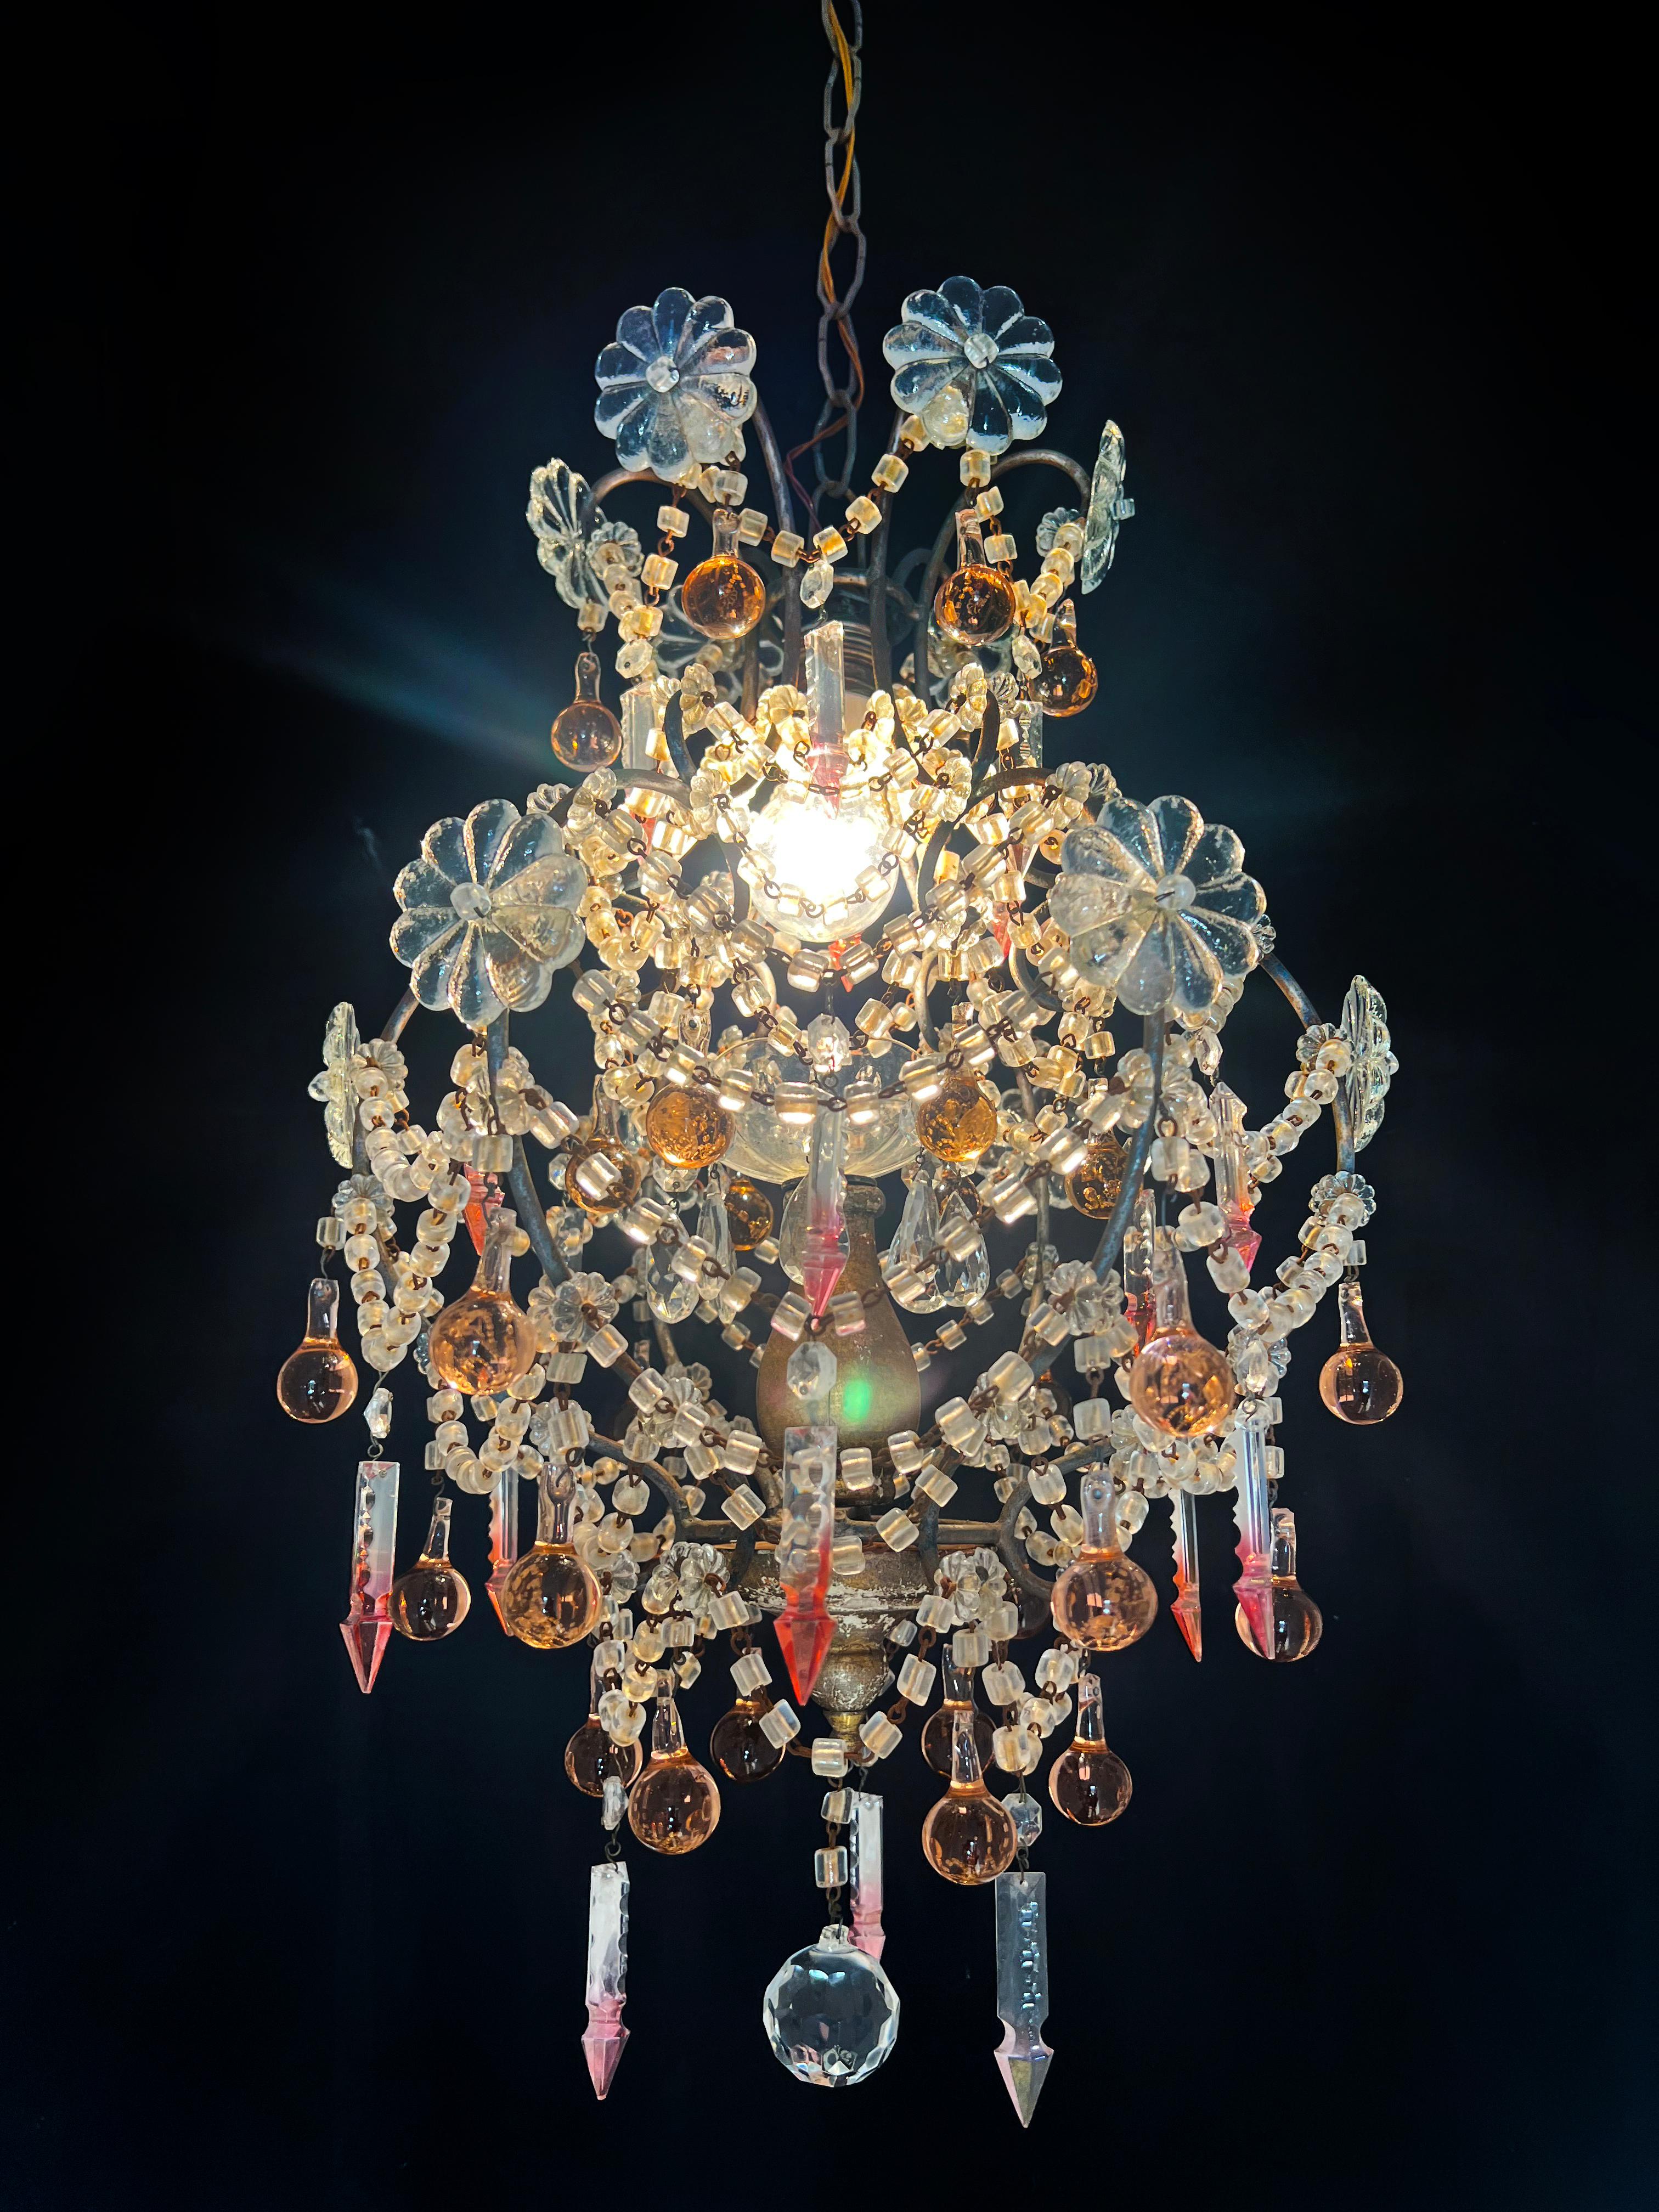 Faszinierender Murano-Kronleuchter, inspiriert von der göttlichen Shirley Temple.
Höhe 107 cm, Durchmesser 38 cm, Höhe ohne Kette 64 cm. Eine Leuchte E27